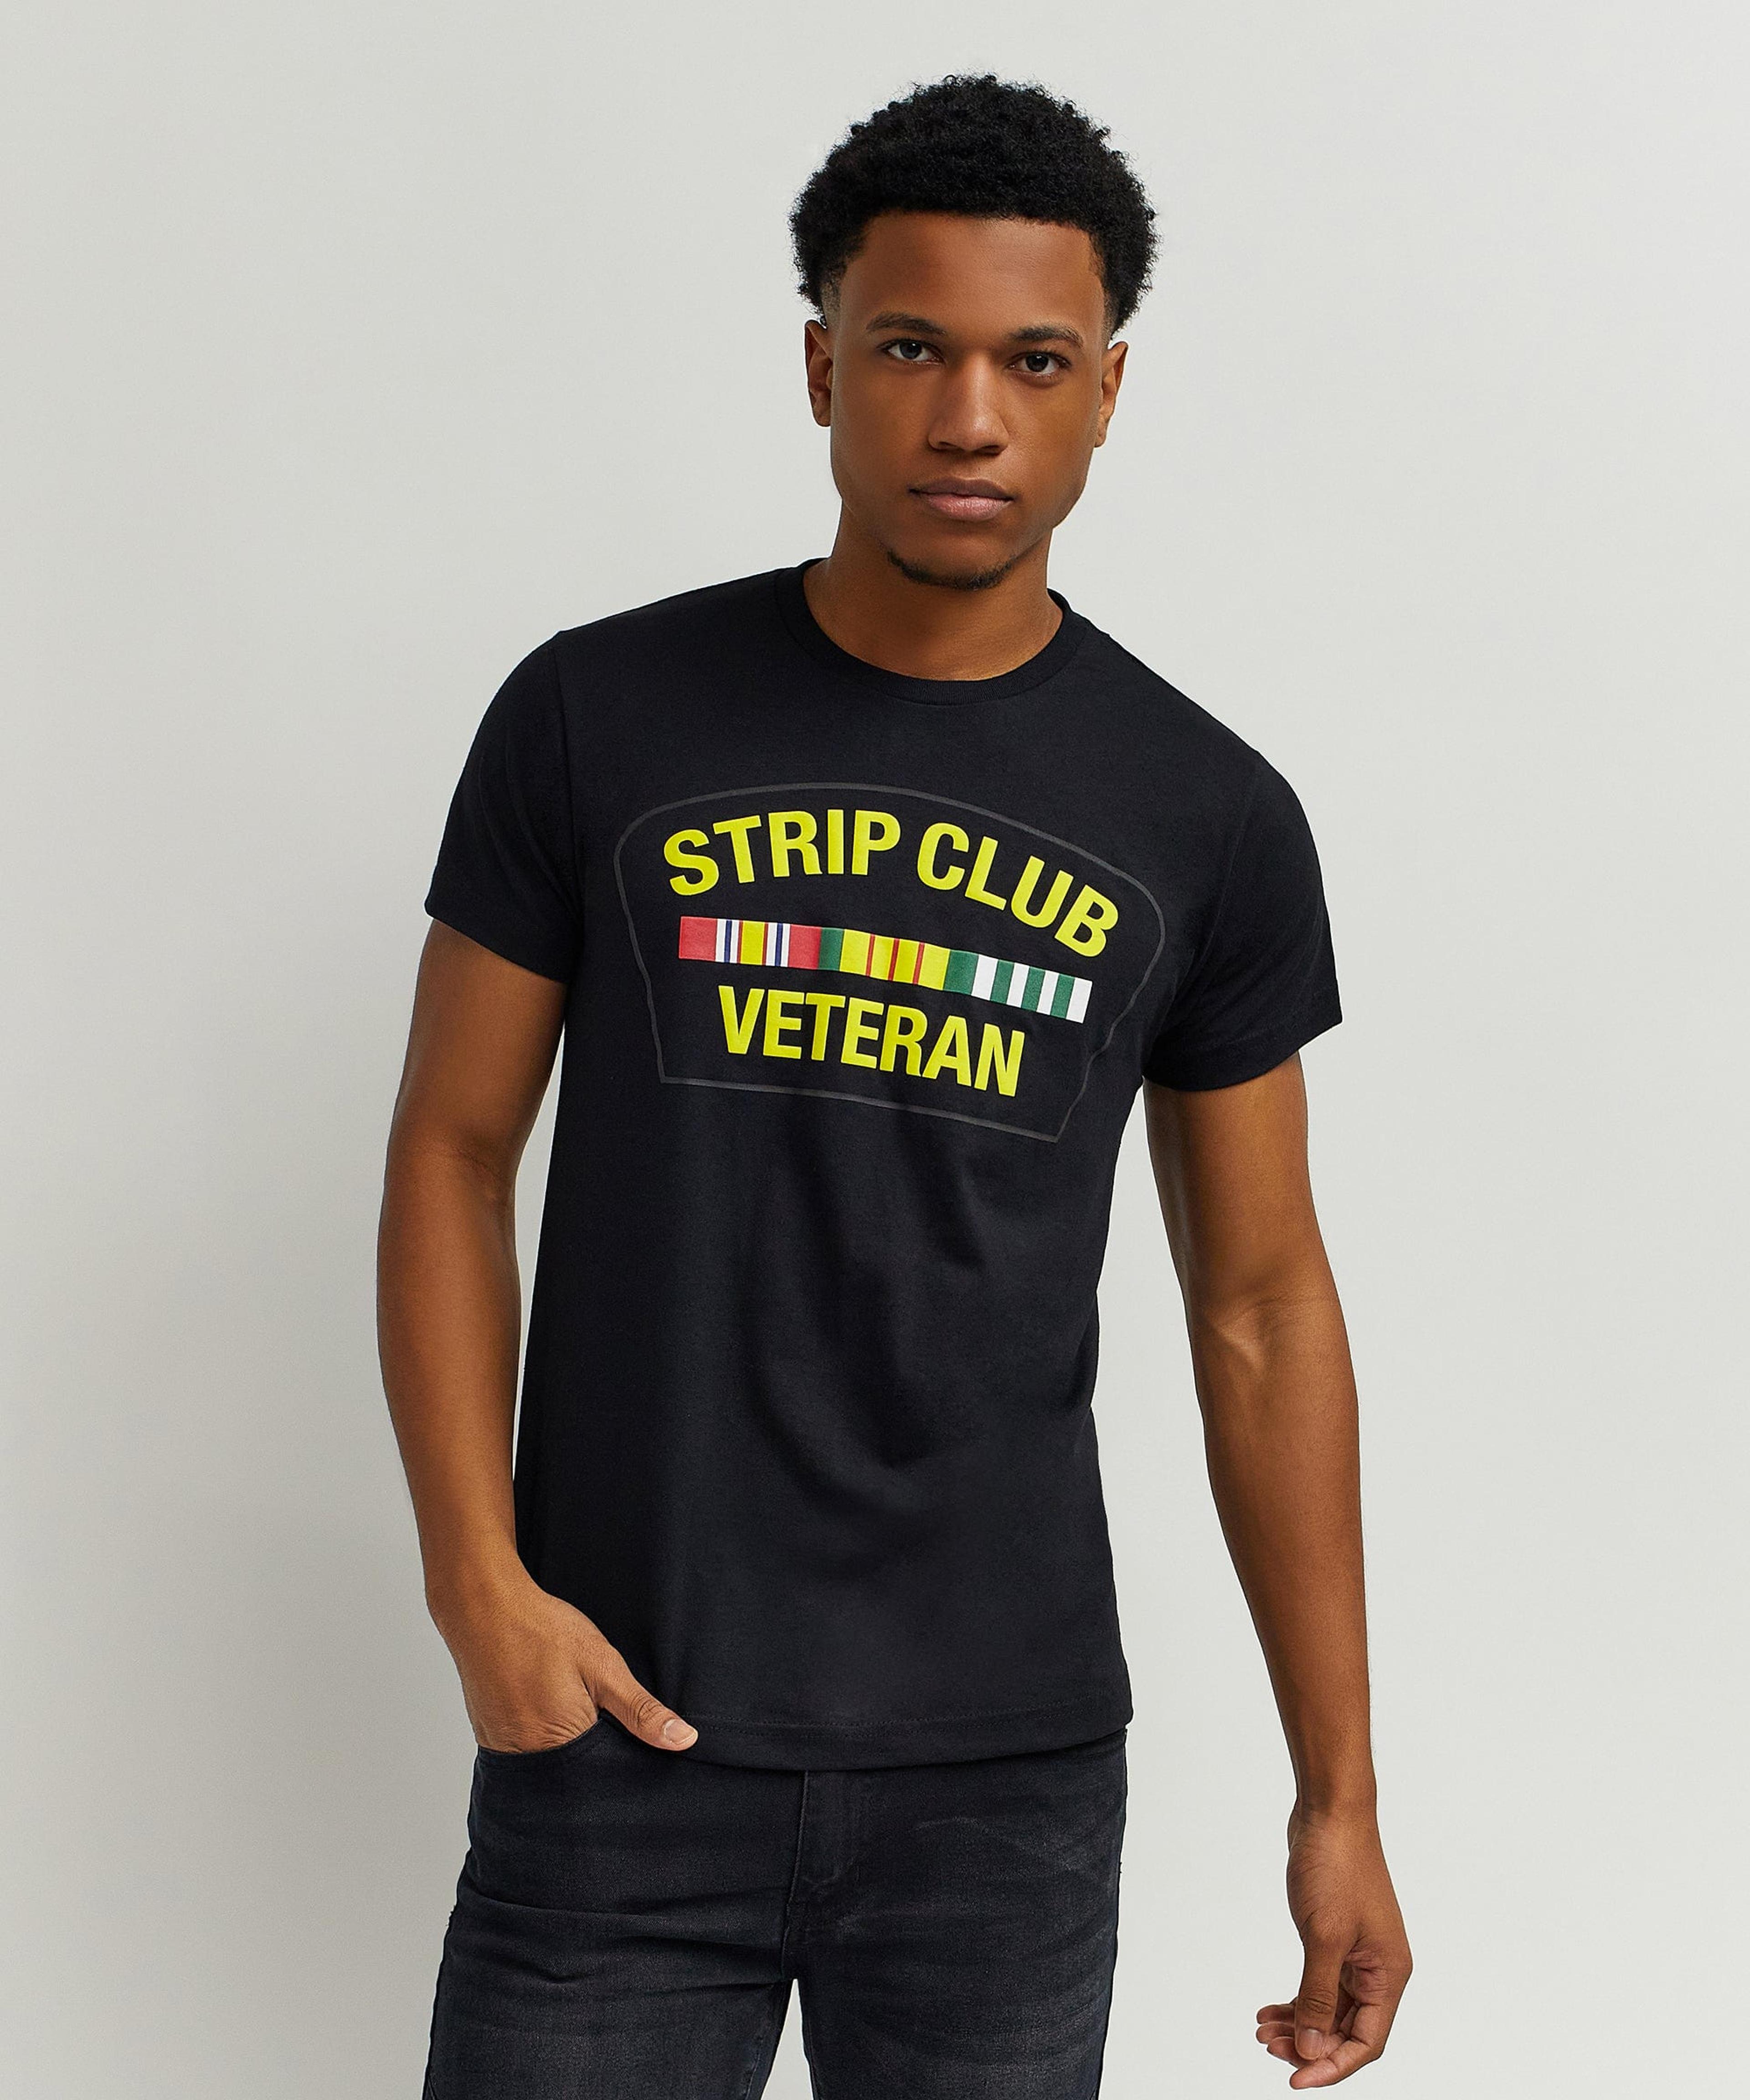 Alternate View 1 of Strip Club Veteran Short Sleeve Tee - Black